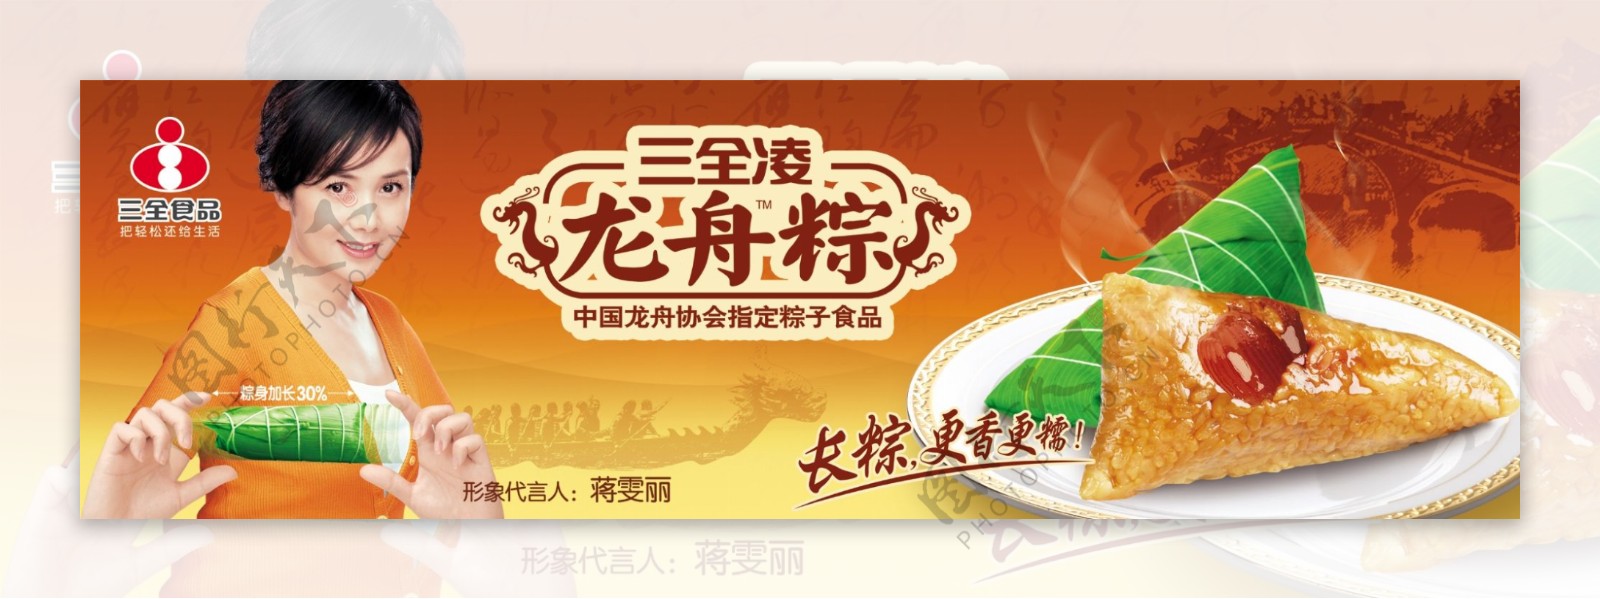 人物女性蒋文丽粽子中国风食品广告海报psd分层素材源文件